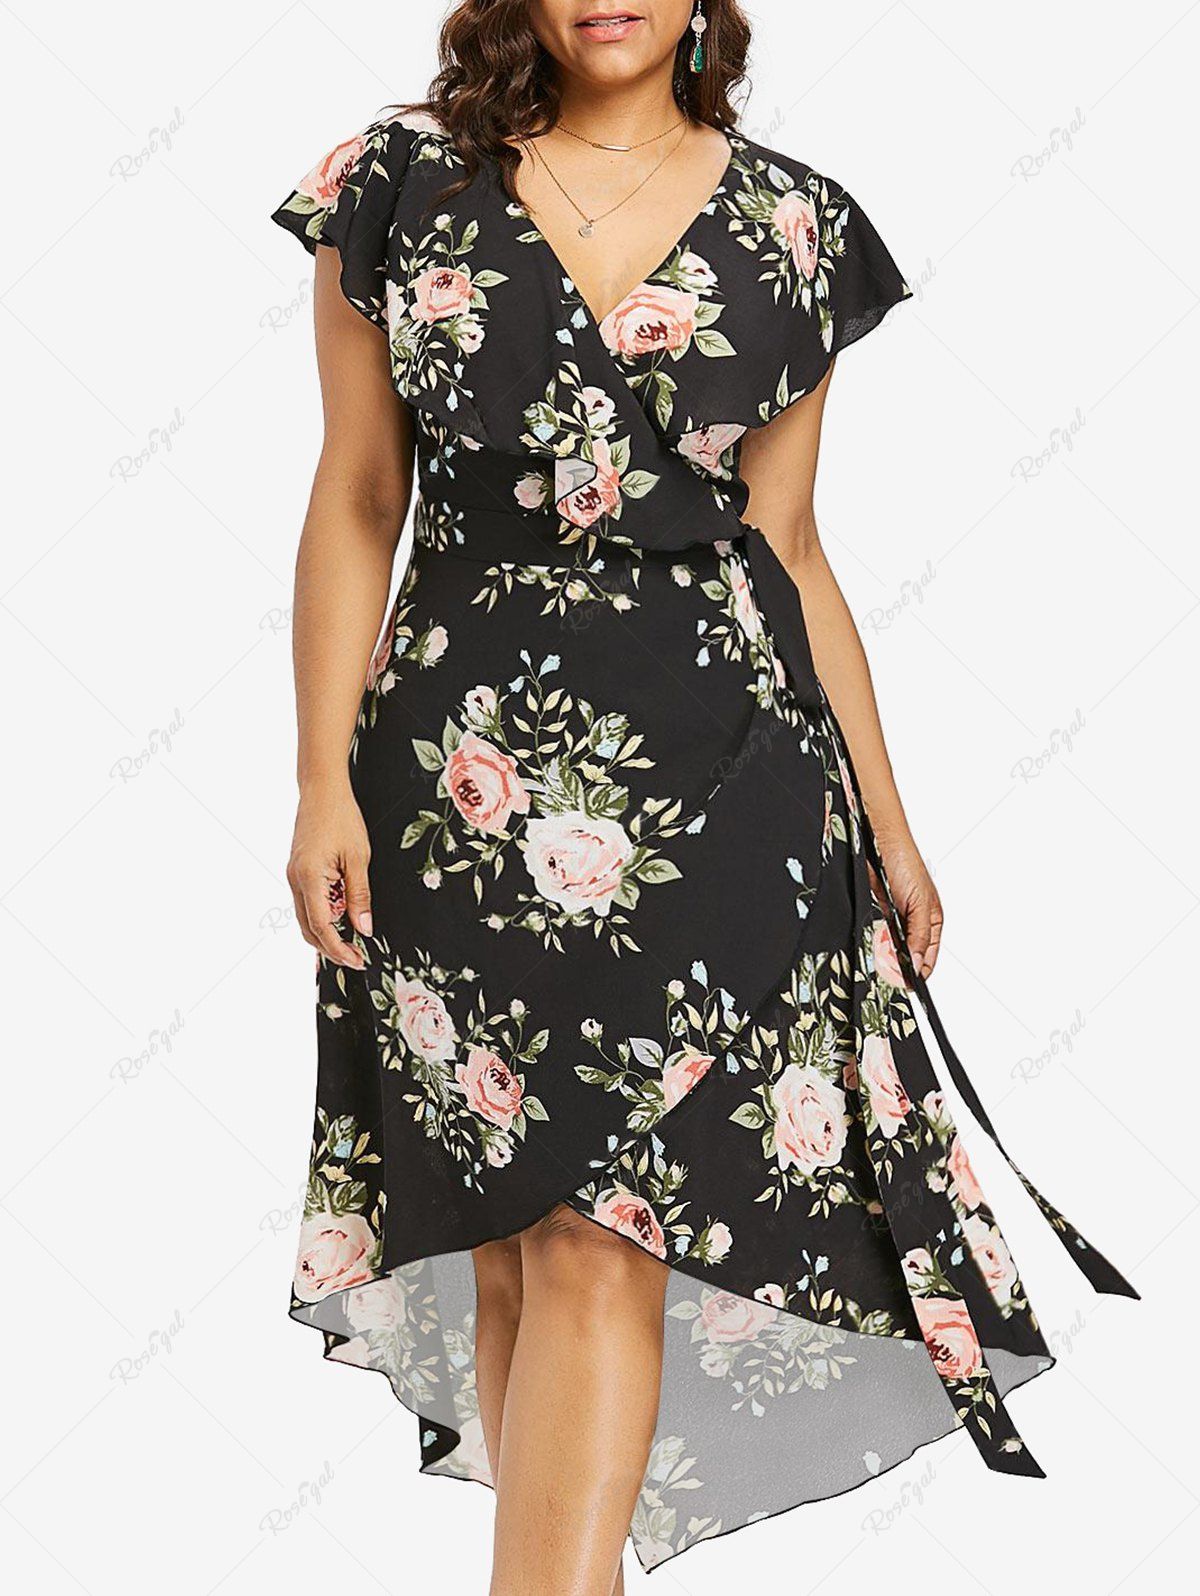 Chic Plus Size Chiffon Floral Print Tied Asymmetric Dress  